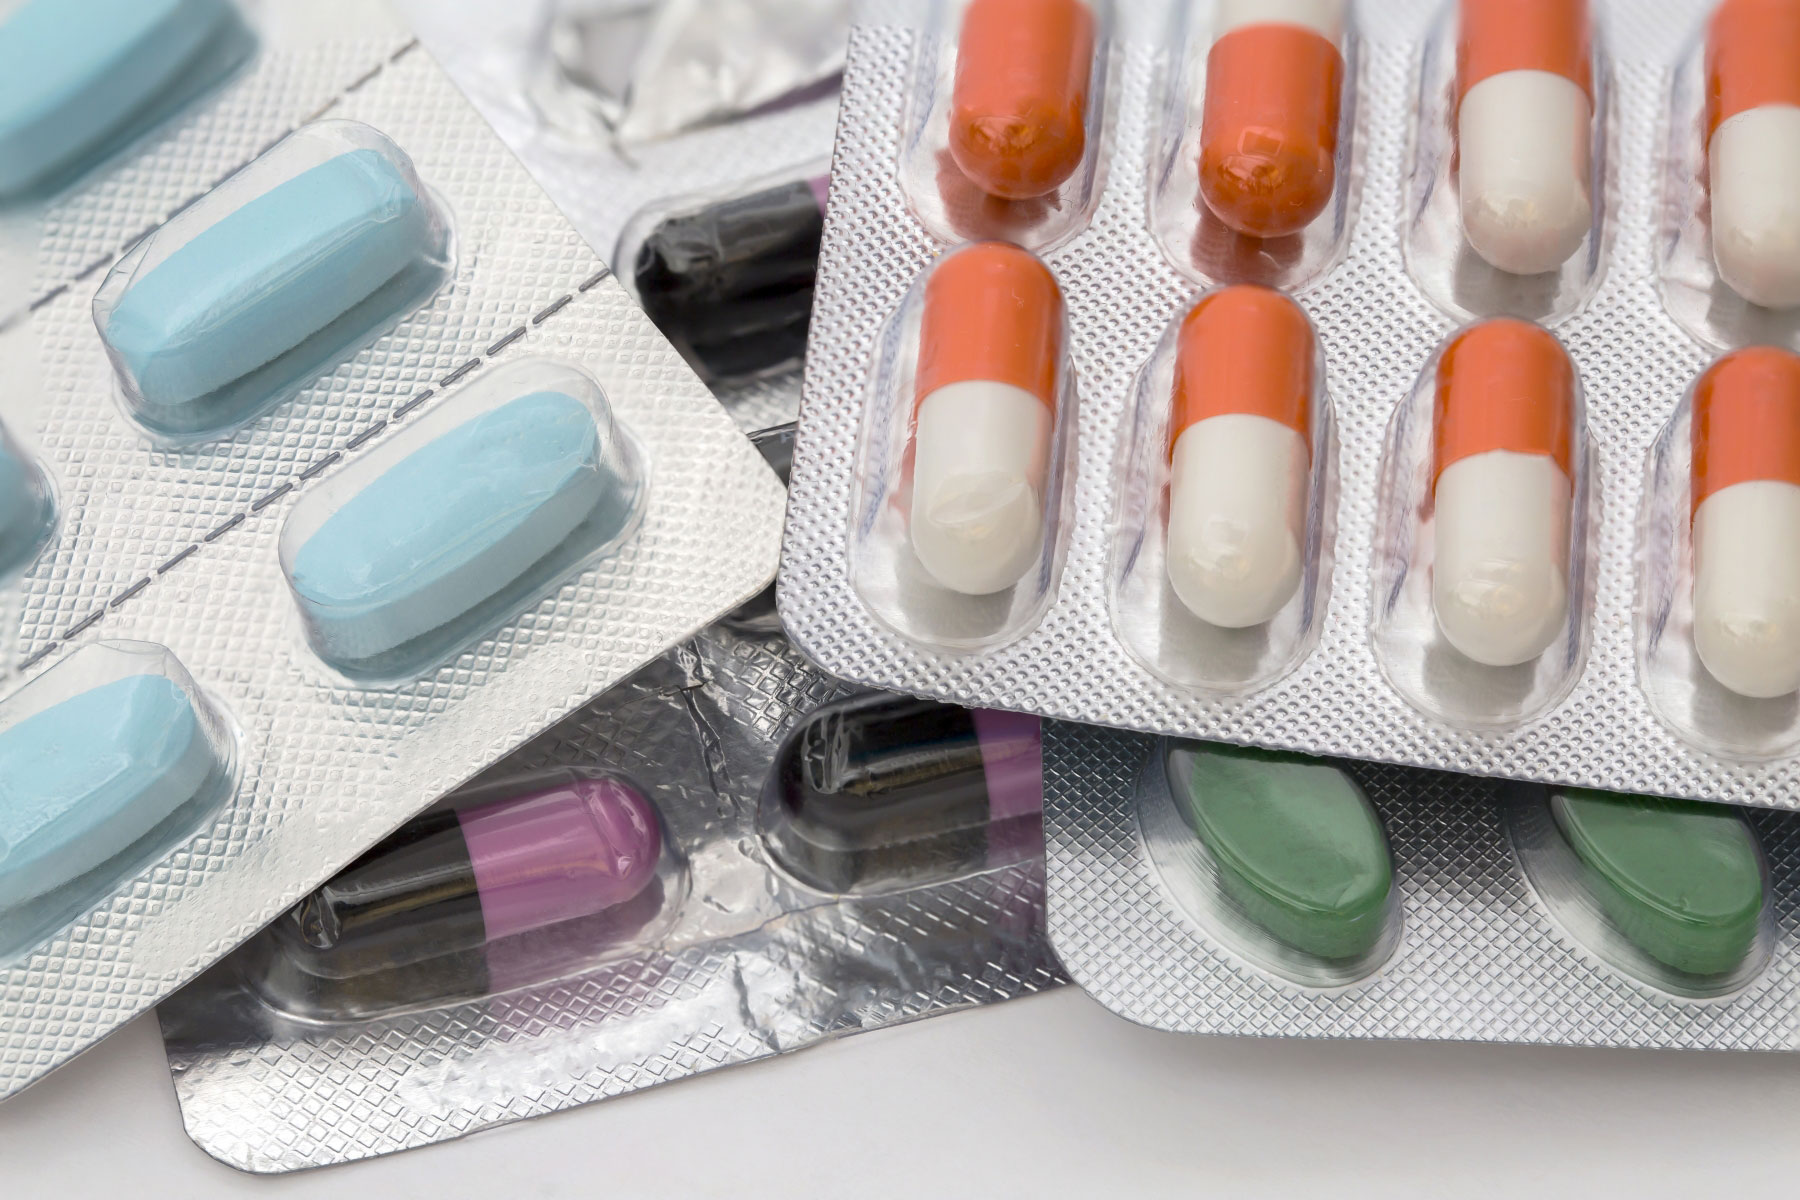 Fire forskjellige typer medisiner, kapsler og tabletter. Illustrasjonsfoto: Mostphotos